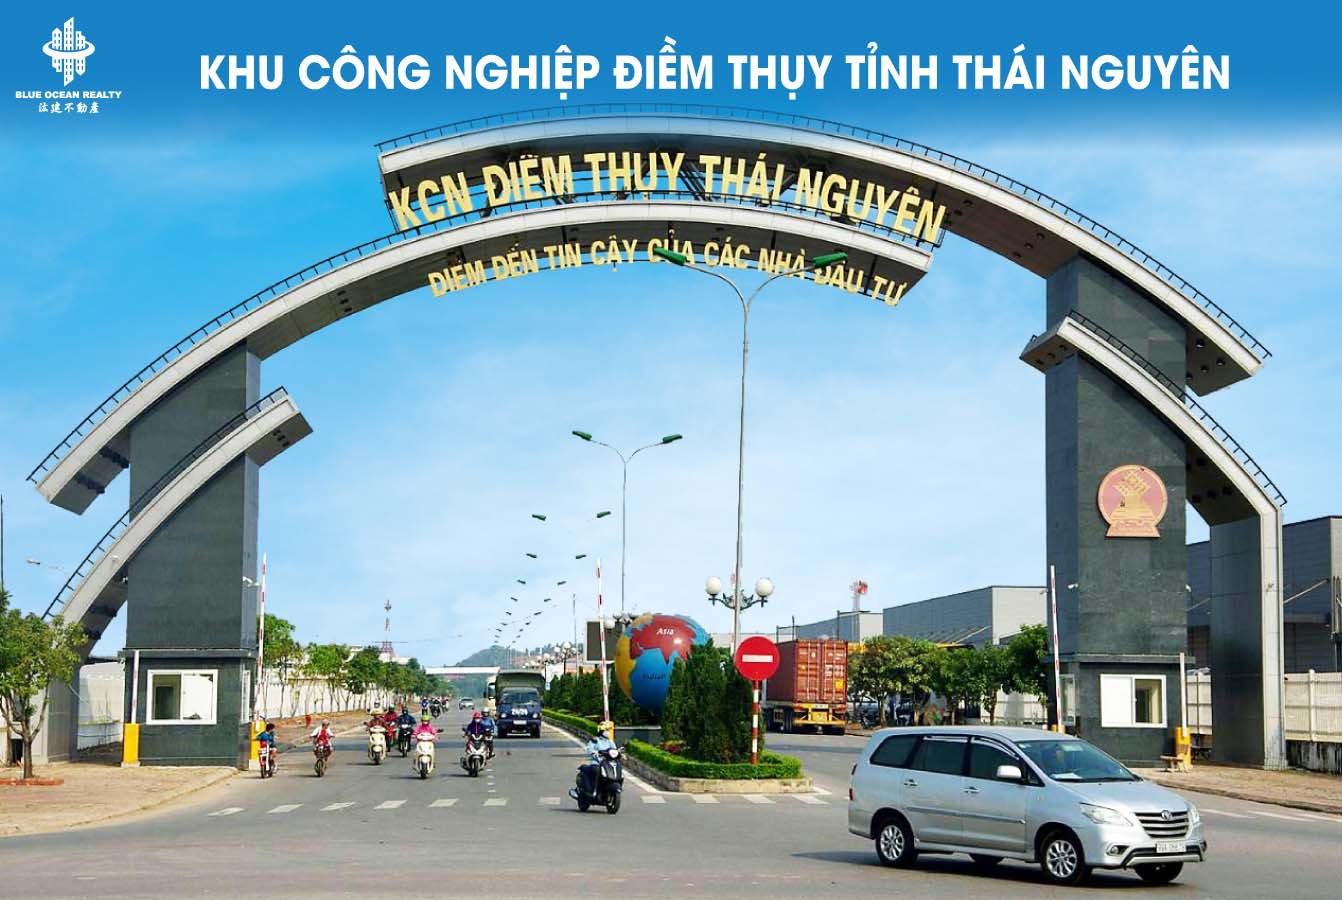 Khu công nghiệp (KCN) Điềm Thụy Thái Nguyên